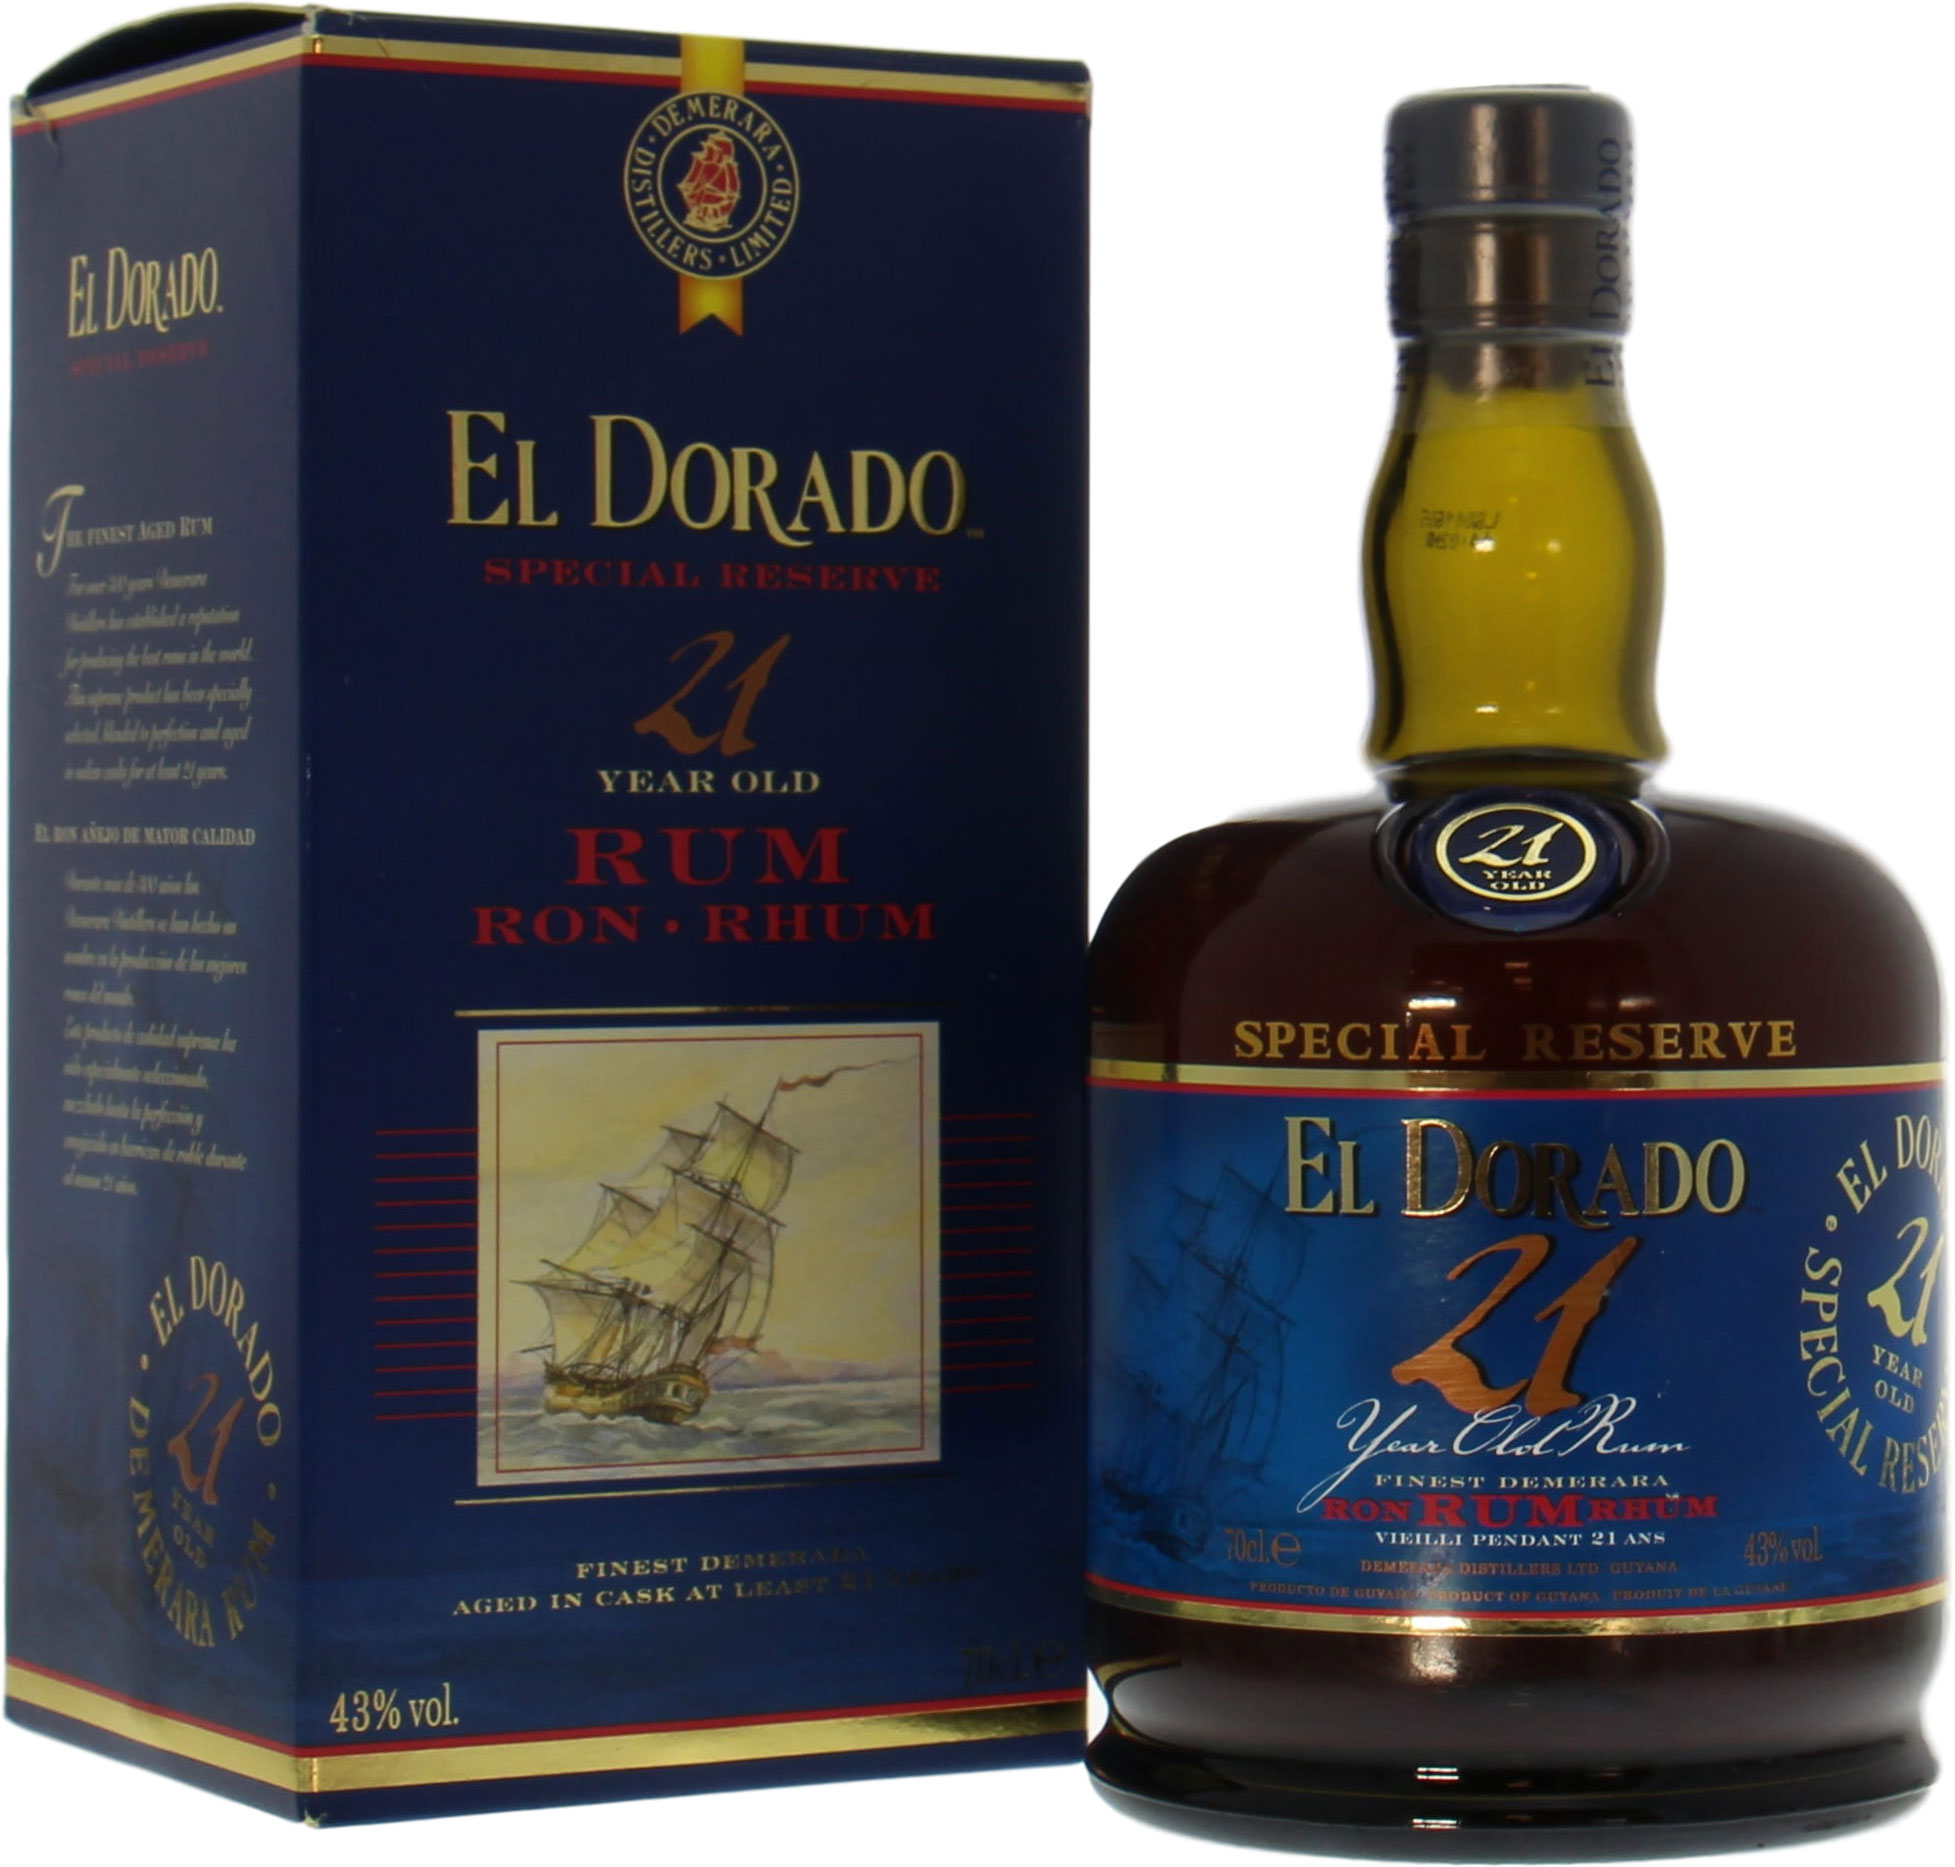 El Dorado - 21 years old rum 43% NV